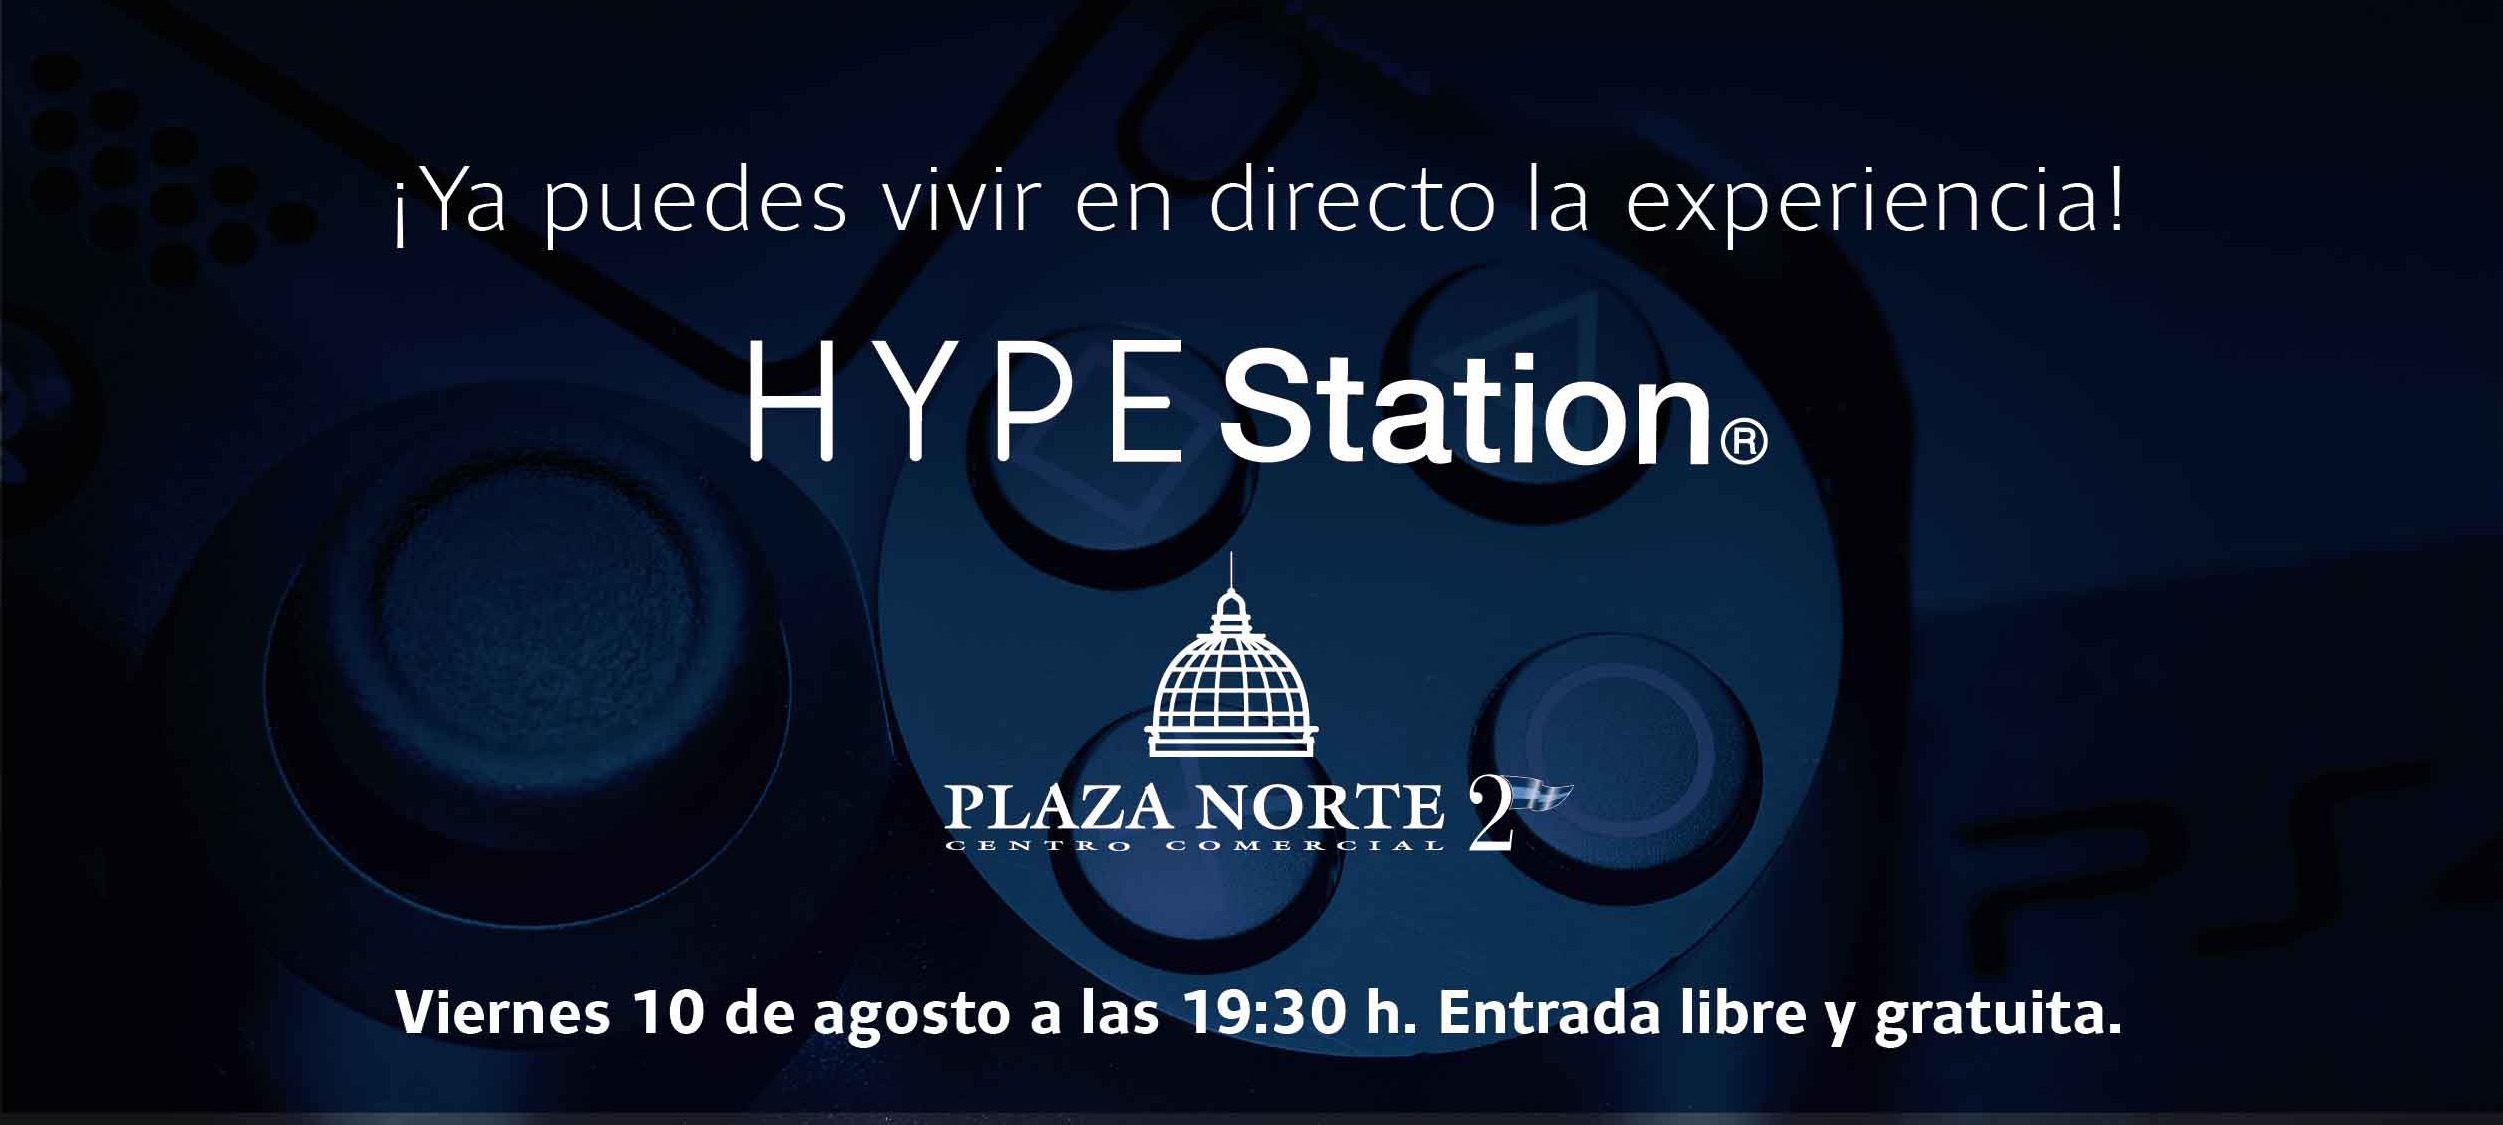 La revolución gamer llega a Madrid este viernes con HYPE Station